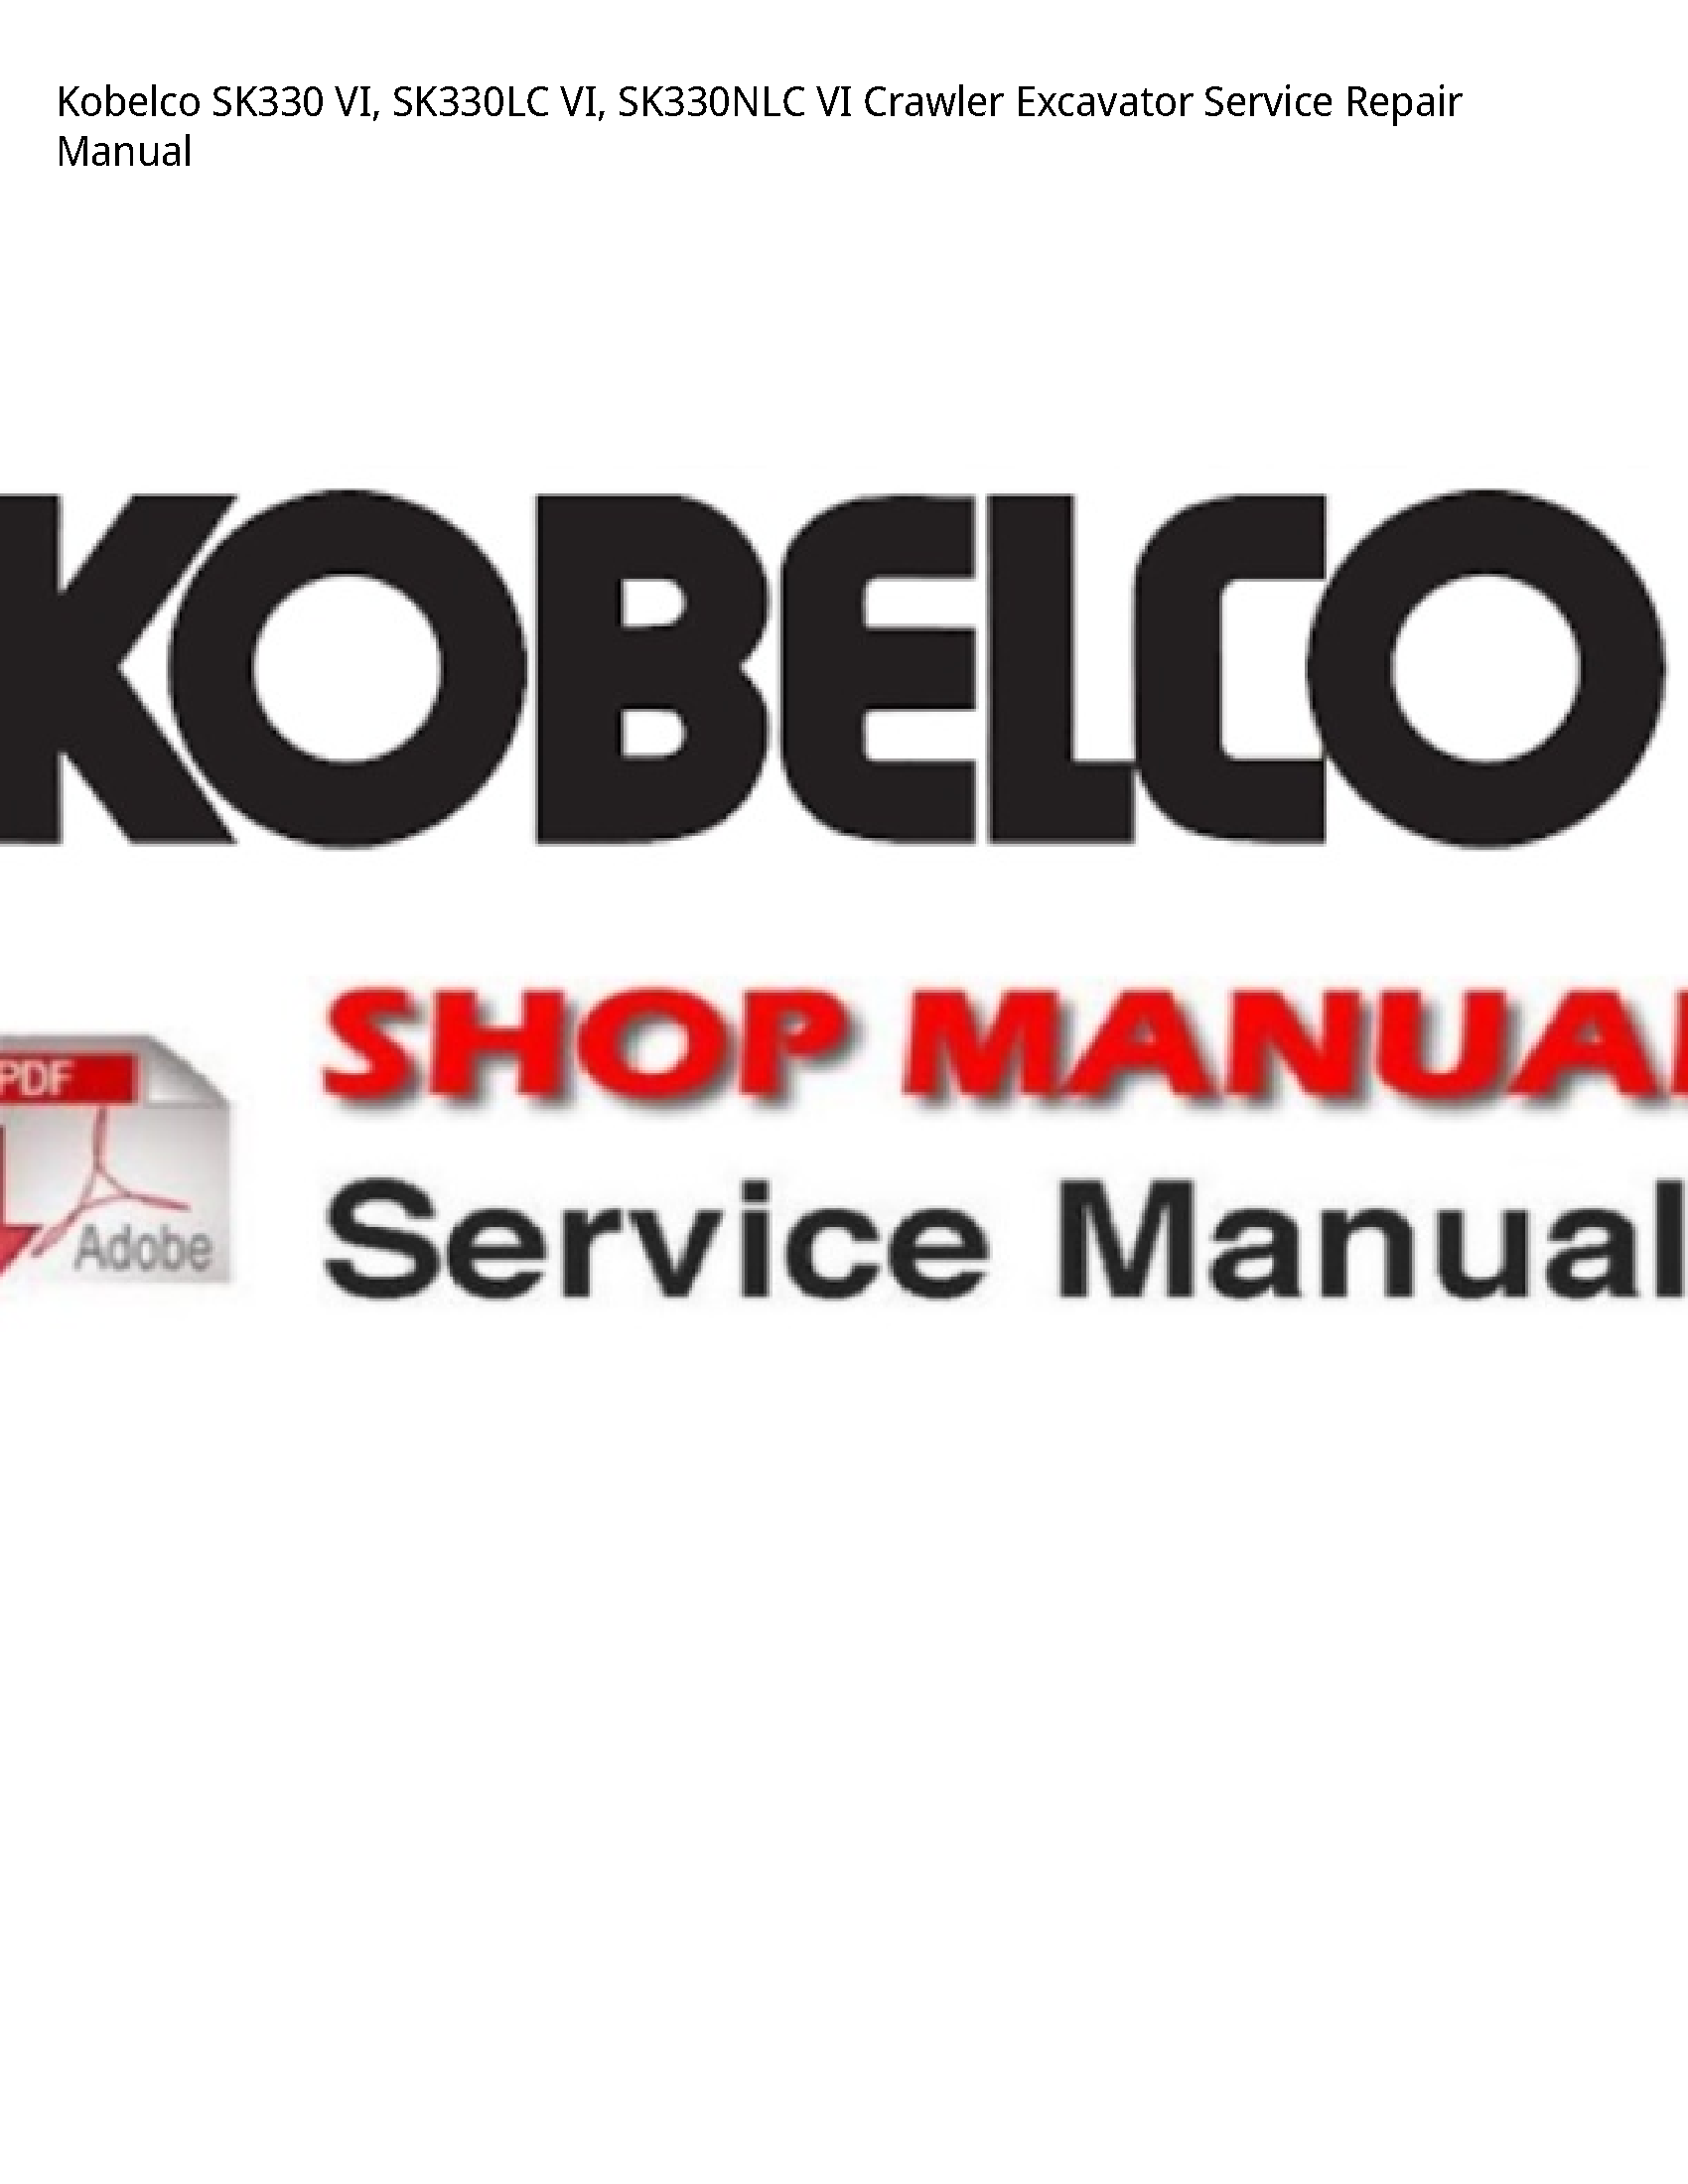 Kobelco SK330 VI manual